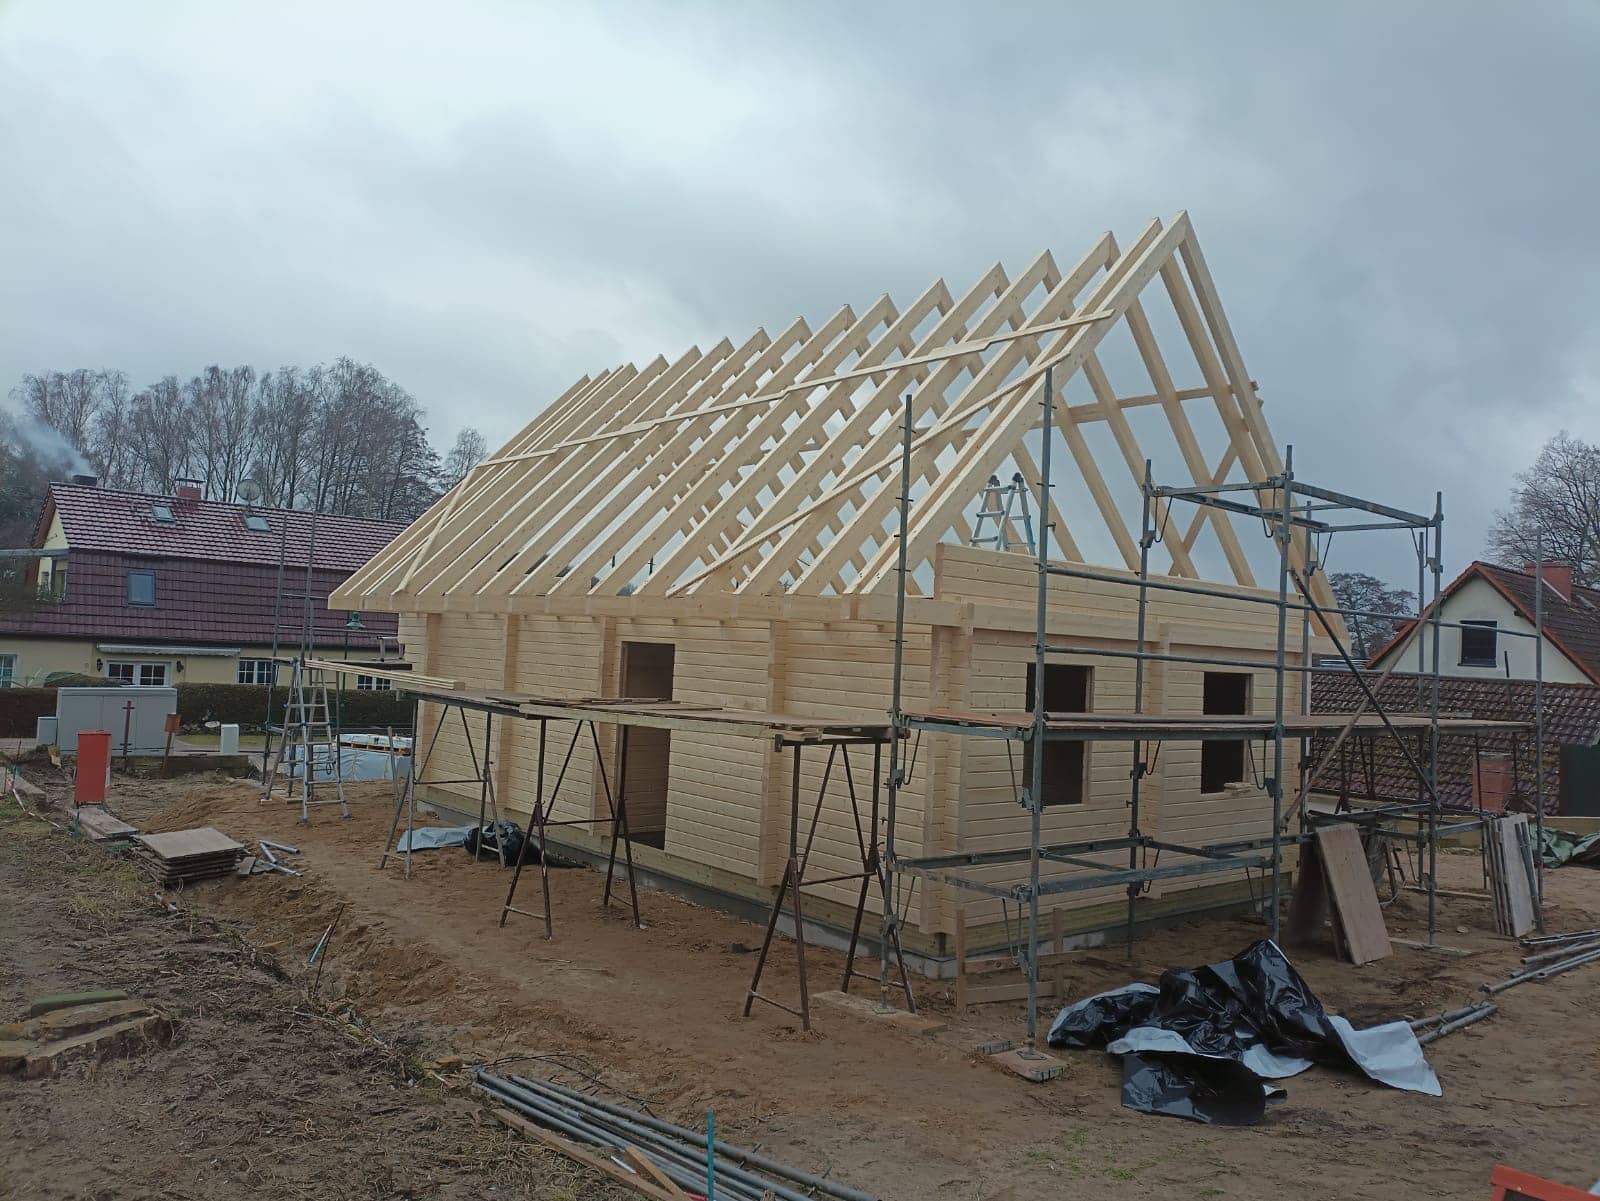 Der Bau eines Wohngebäudes aus Holz ist im Gange, der Dachstuhl ist teilweise fertiggestellt.